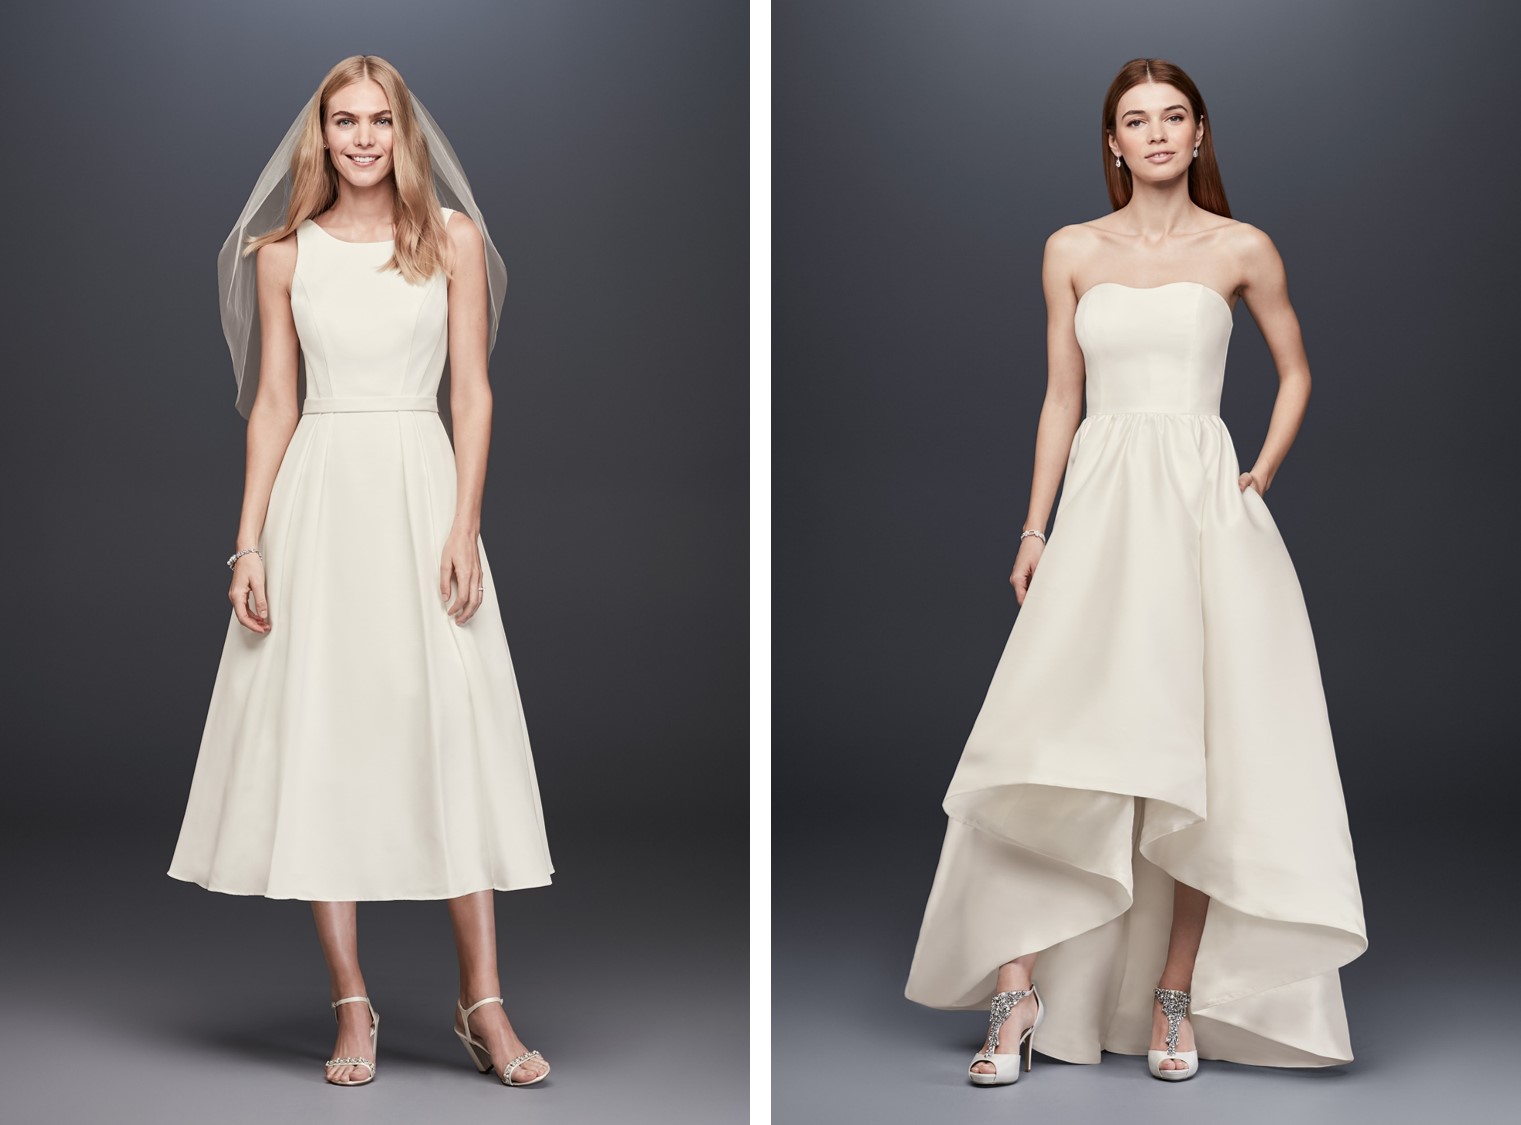 Women modeling short wedding dresses